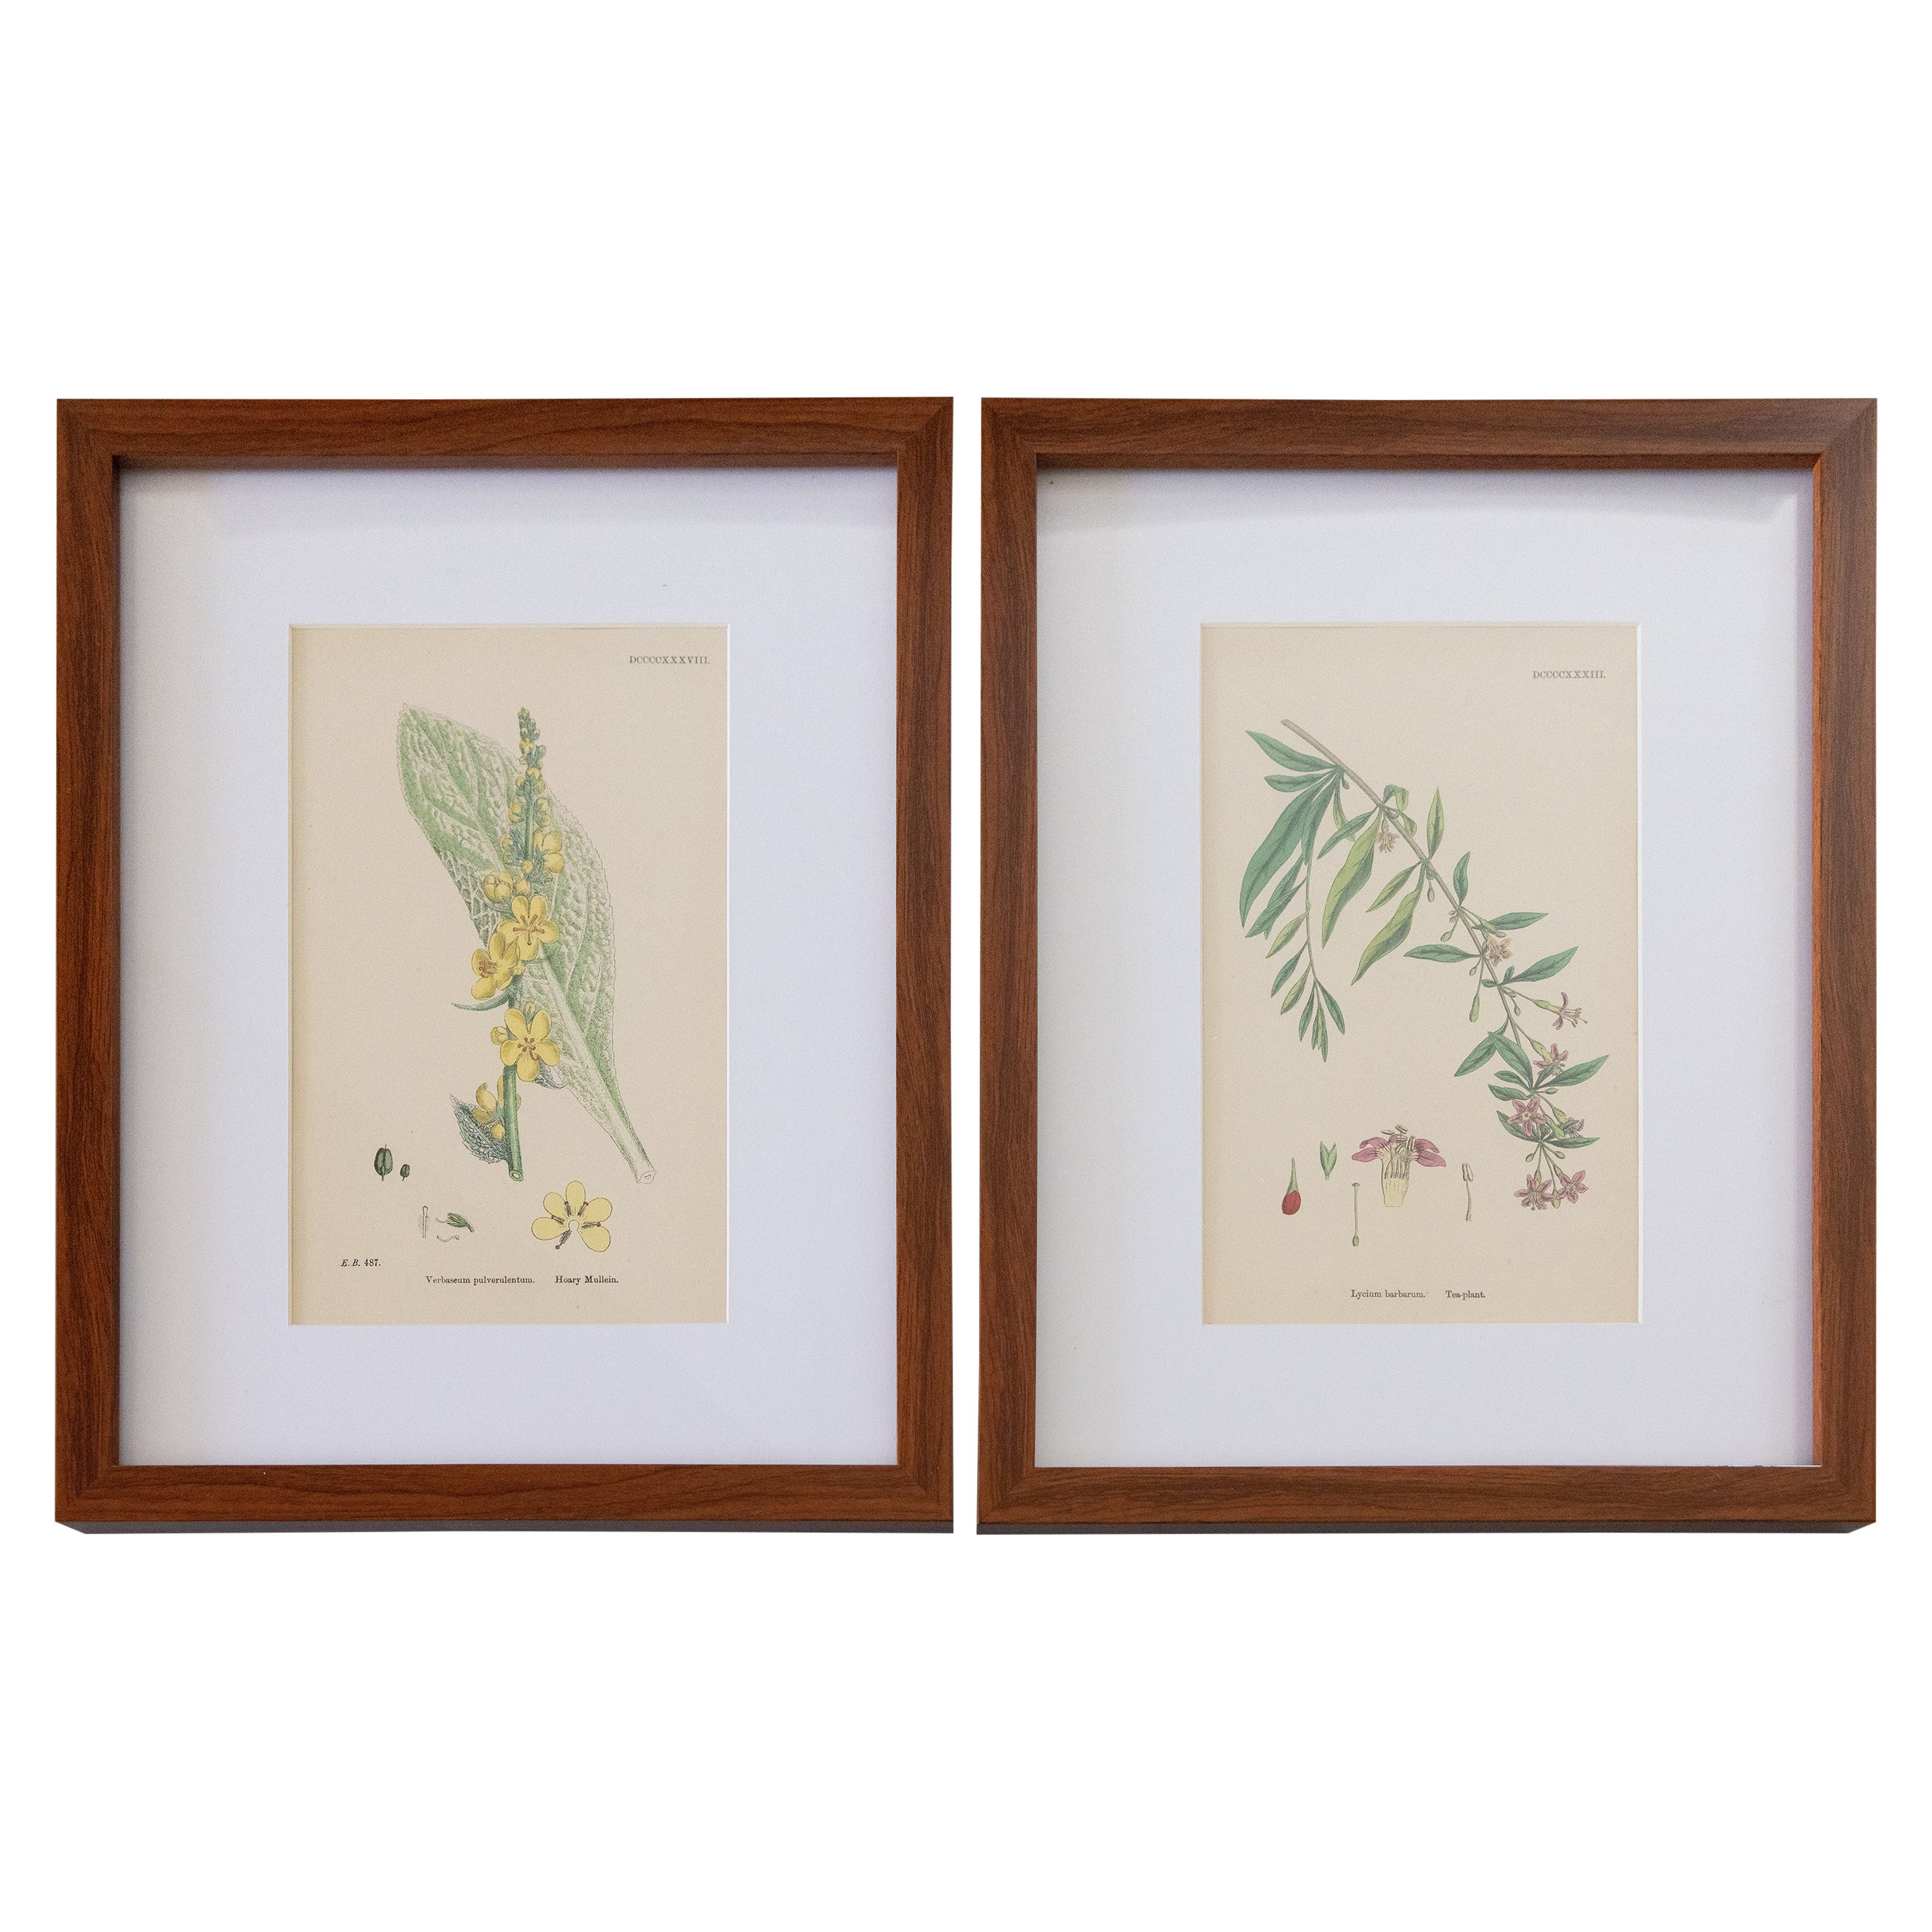 Sowerby's English Botany - Custom Framed Botanical Plates, Set of Two